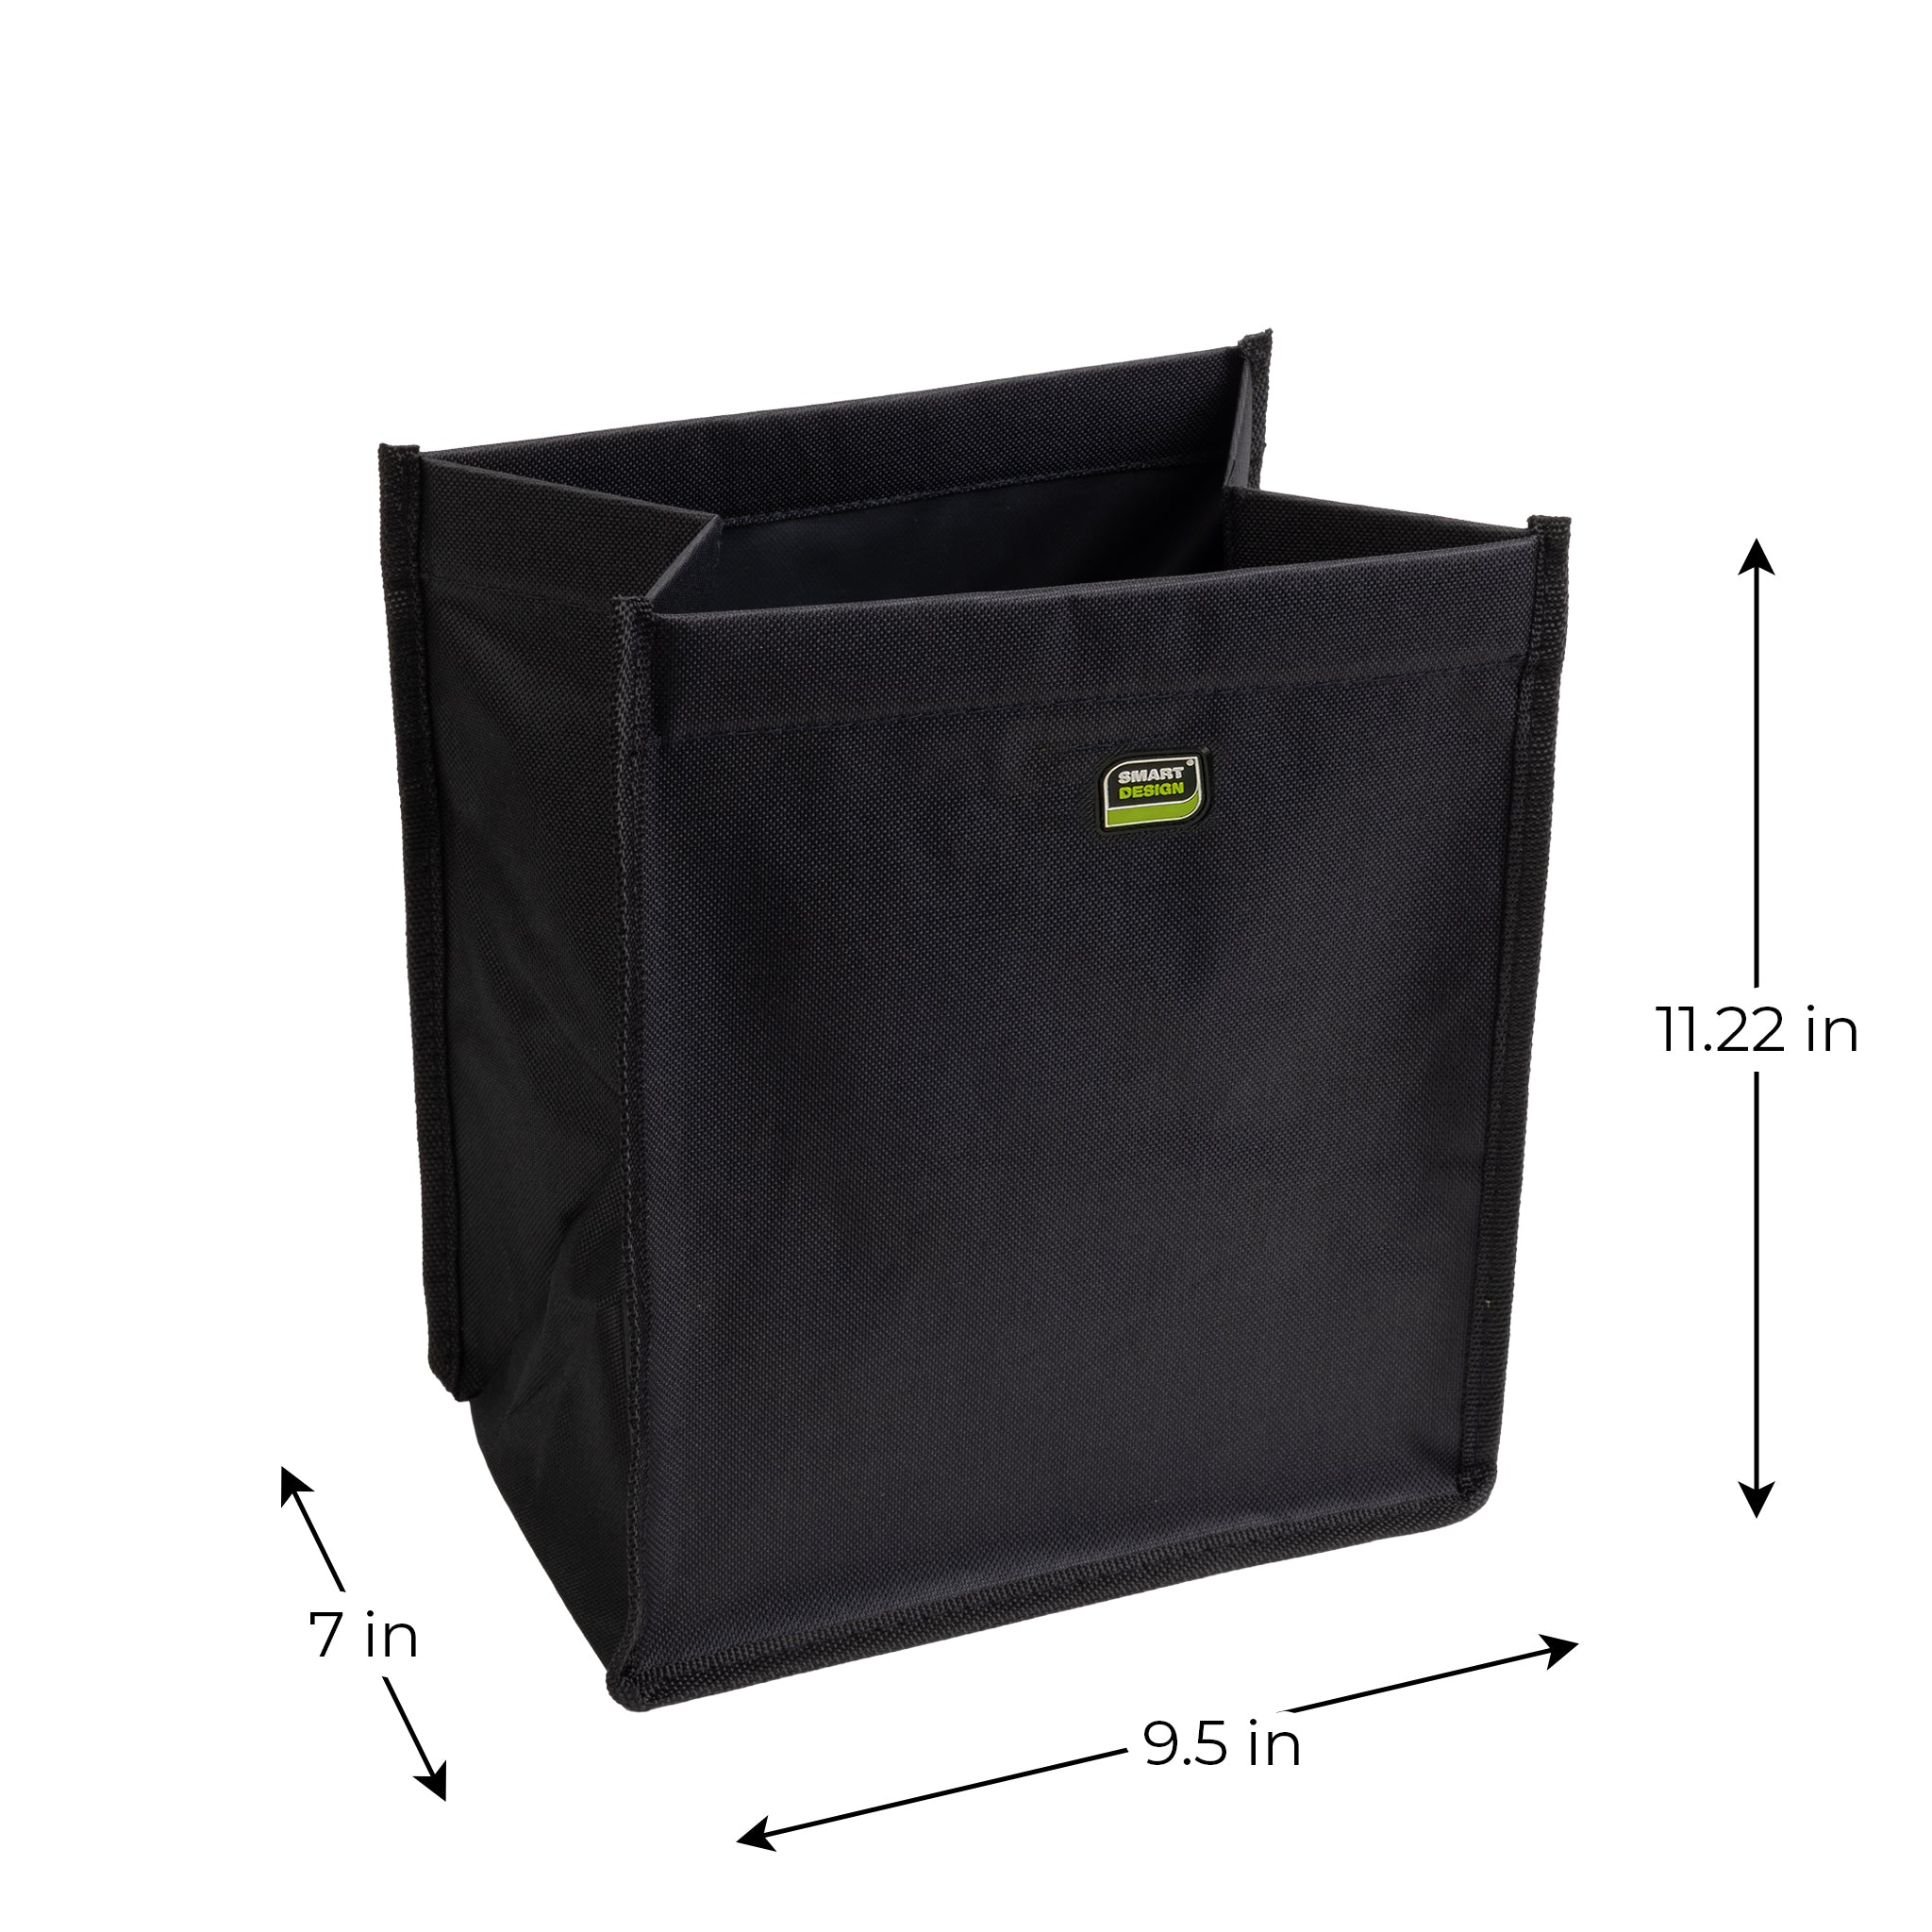 Vehicle Waste Bag with Adjustable Strap - Black - Smart Design® 4